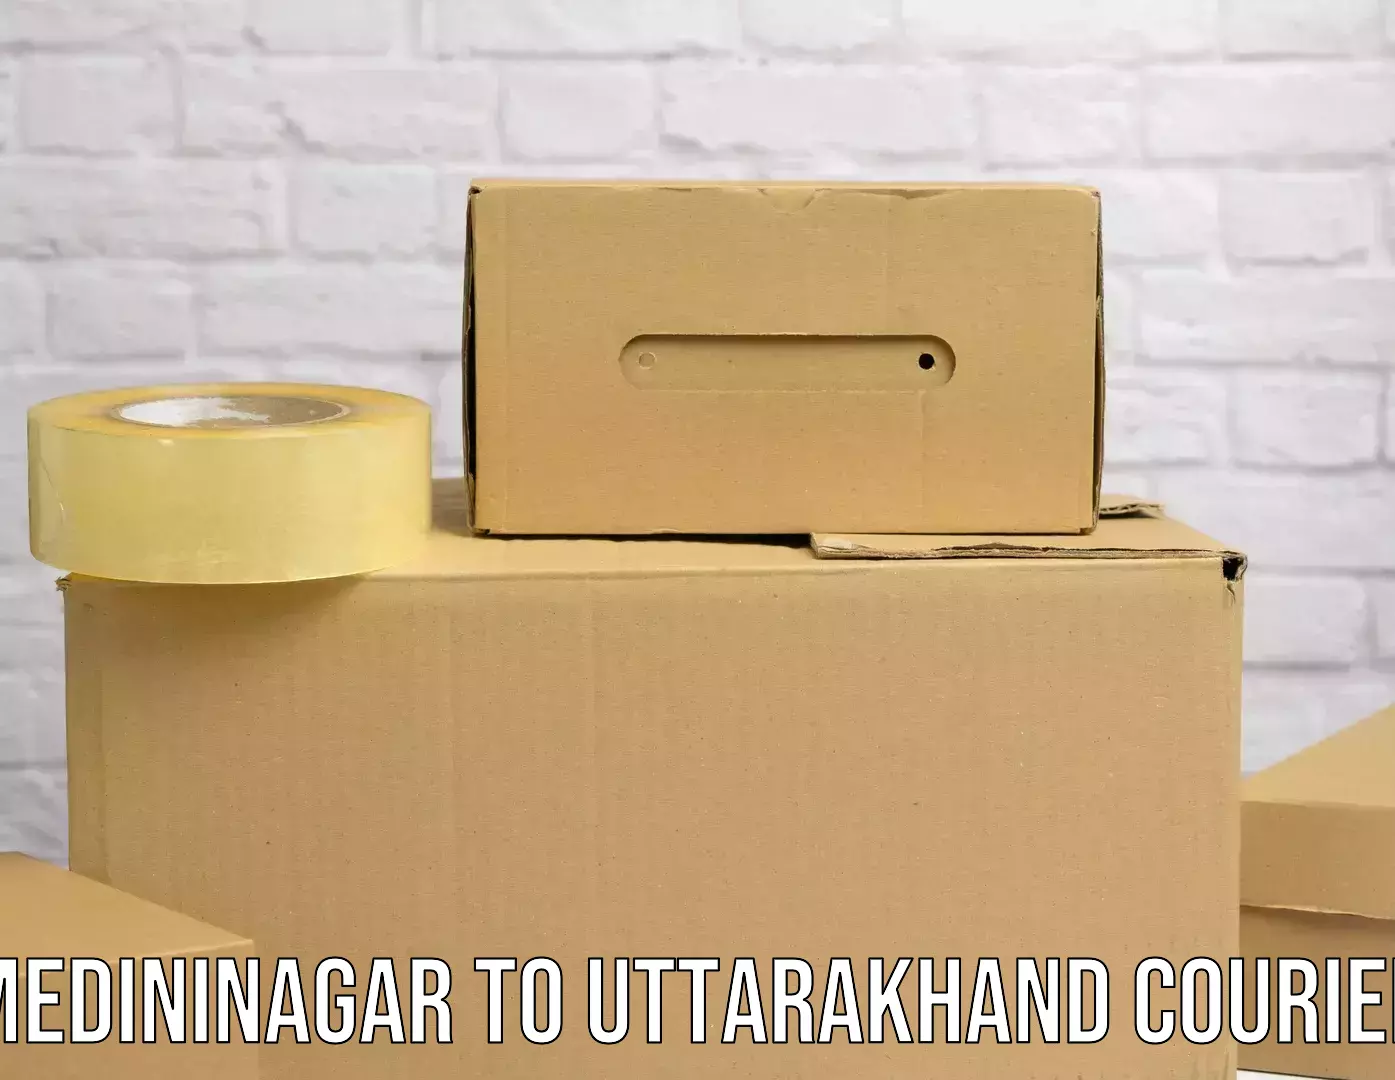 High-speed parcel service Medininagar to Uttarakhand